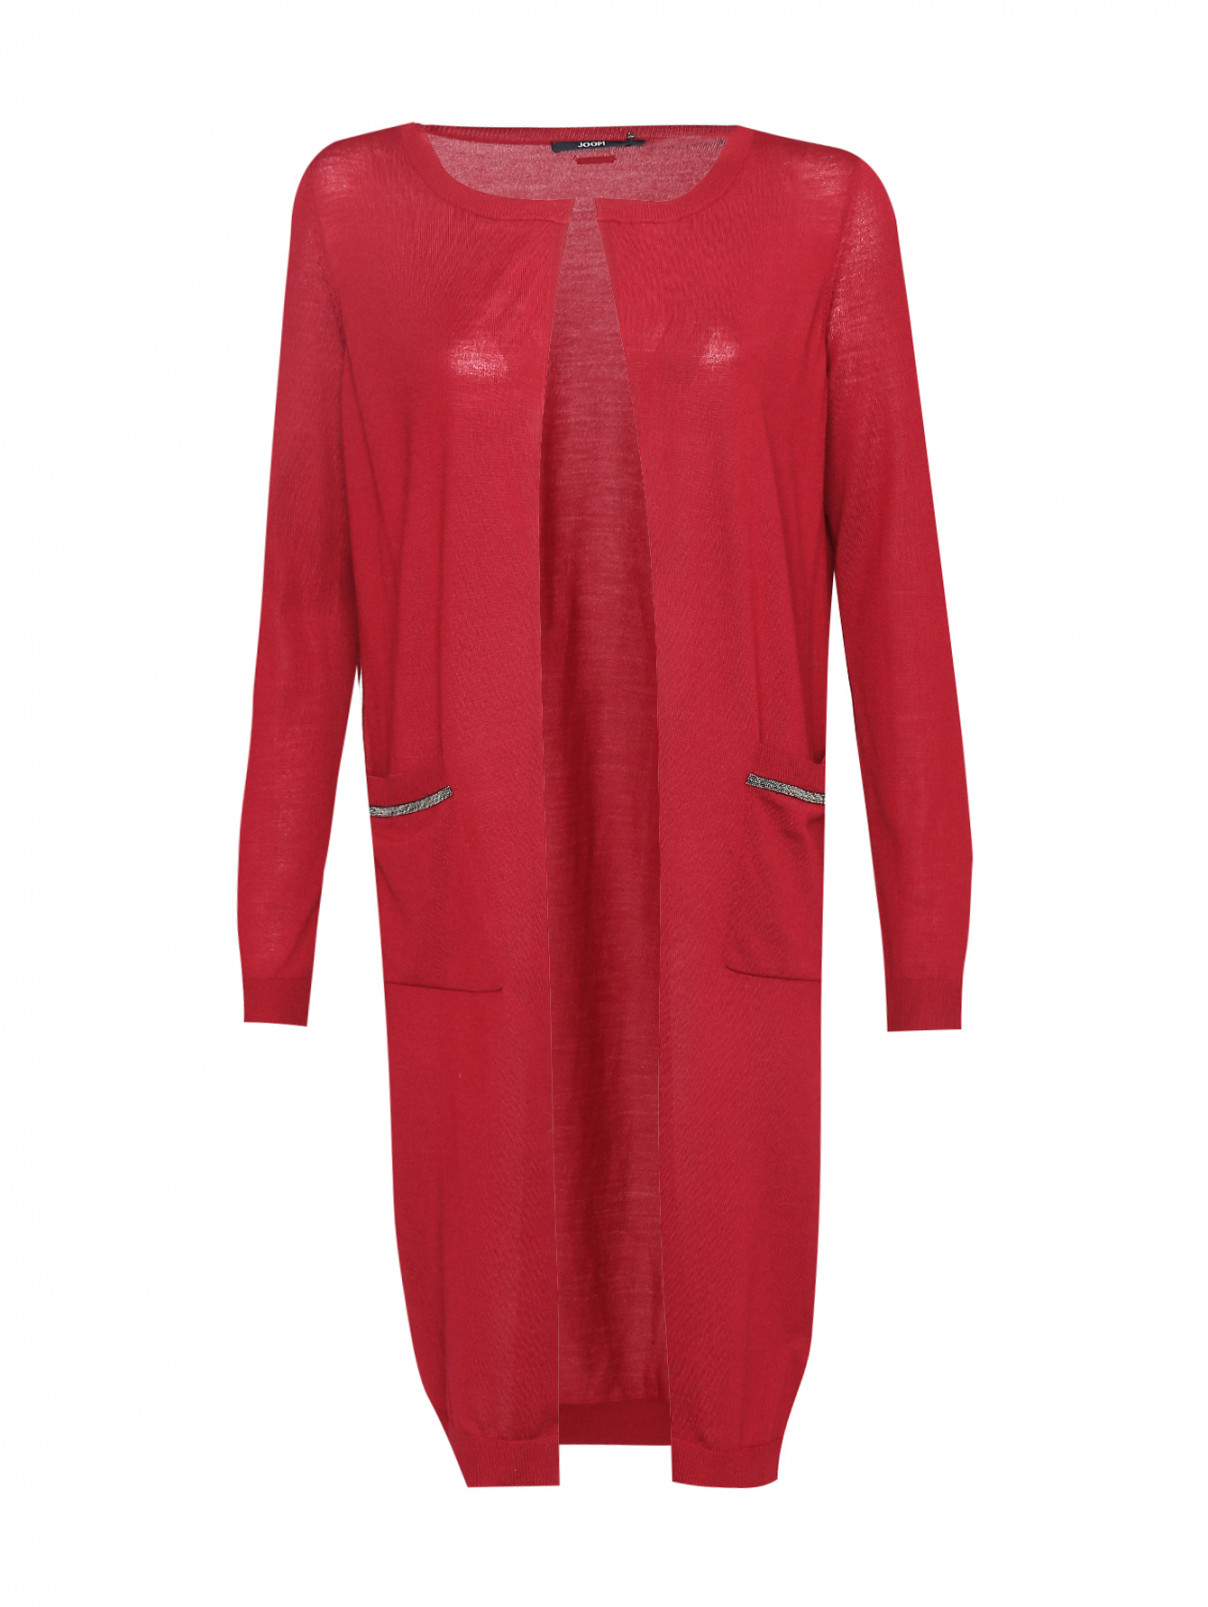 Кардиган из шерсти с карманами Joop  –  Общий вид  – Цвет:  Красный